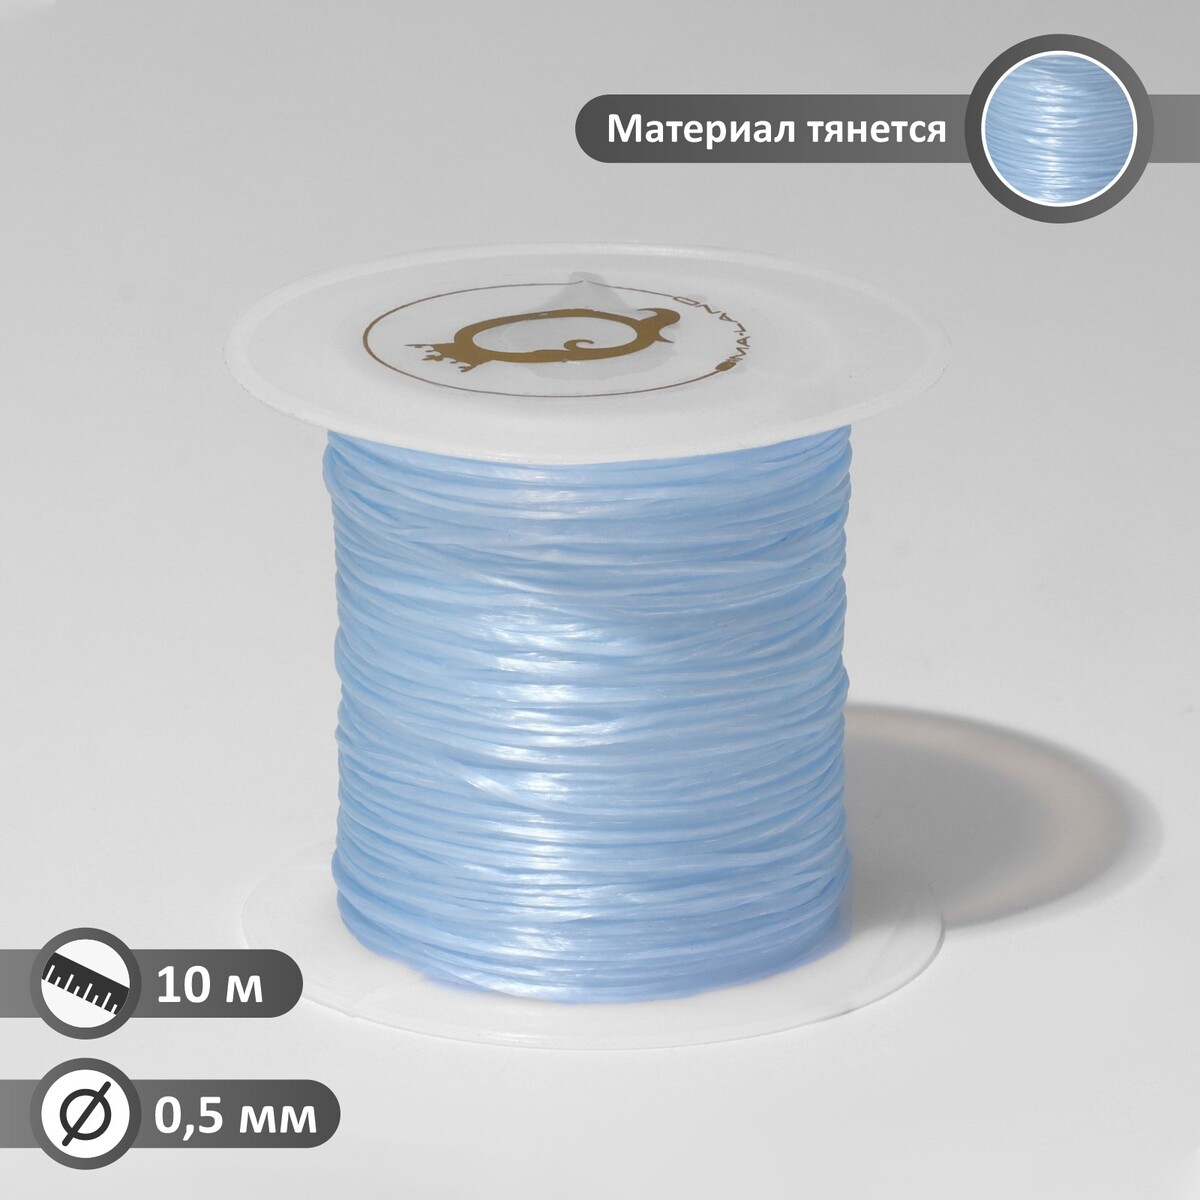 Нить силиконовая (резинка) d=0,5 мм, l=10 м (прочность 2250 денье), цвет голубой нить силиконовая резинка d 0 5мм l 10м прочность 2250 денье